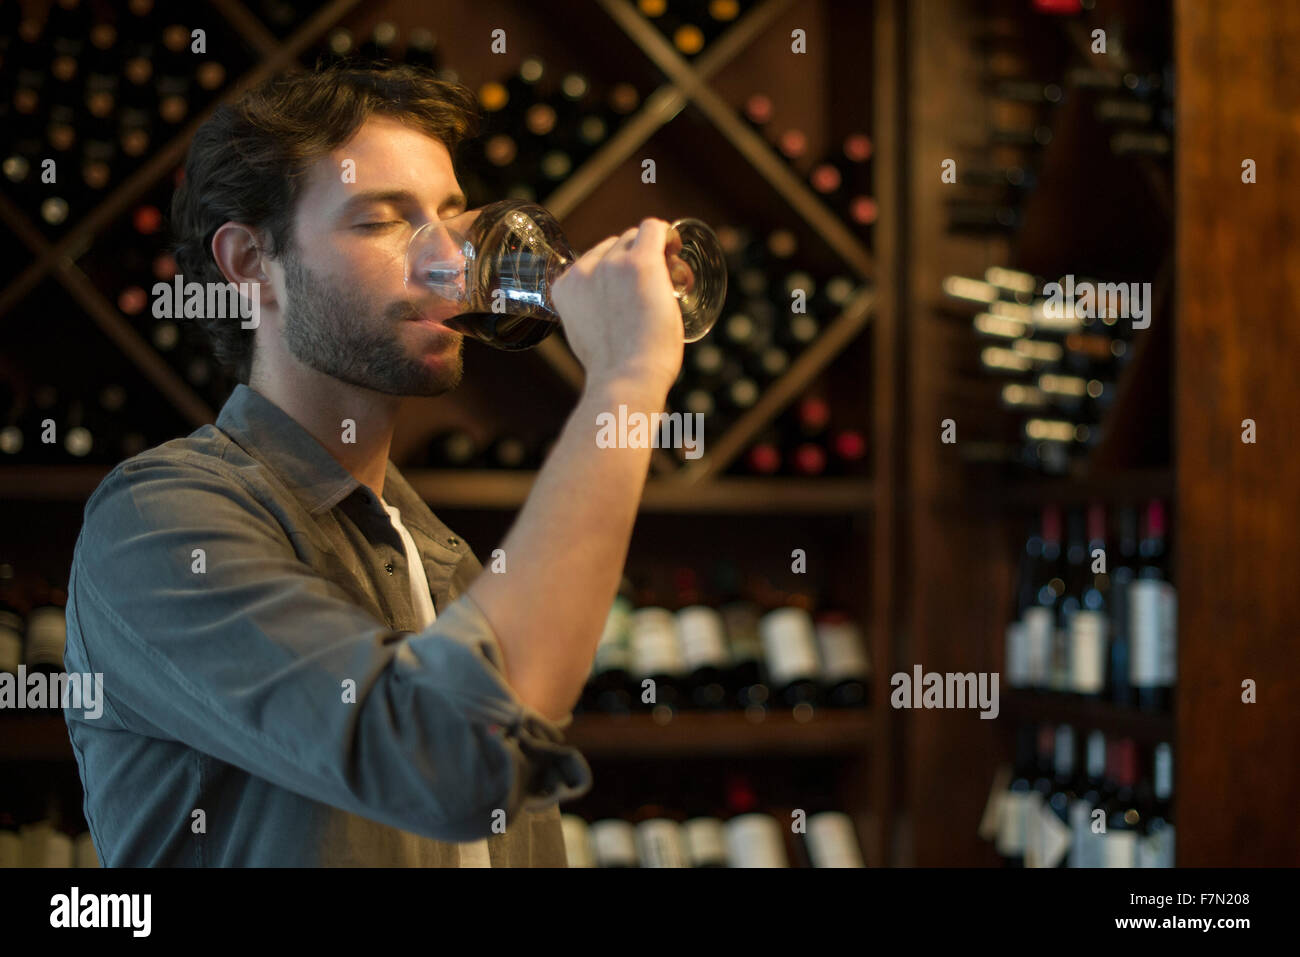 Sommelier tasting glass of wine Stock Photo